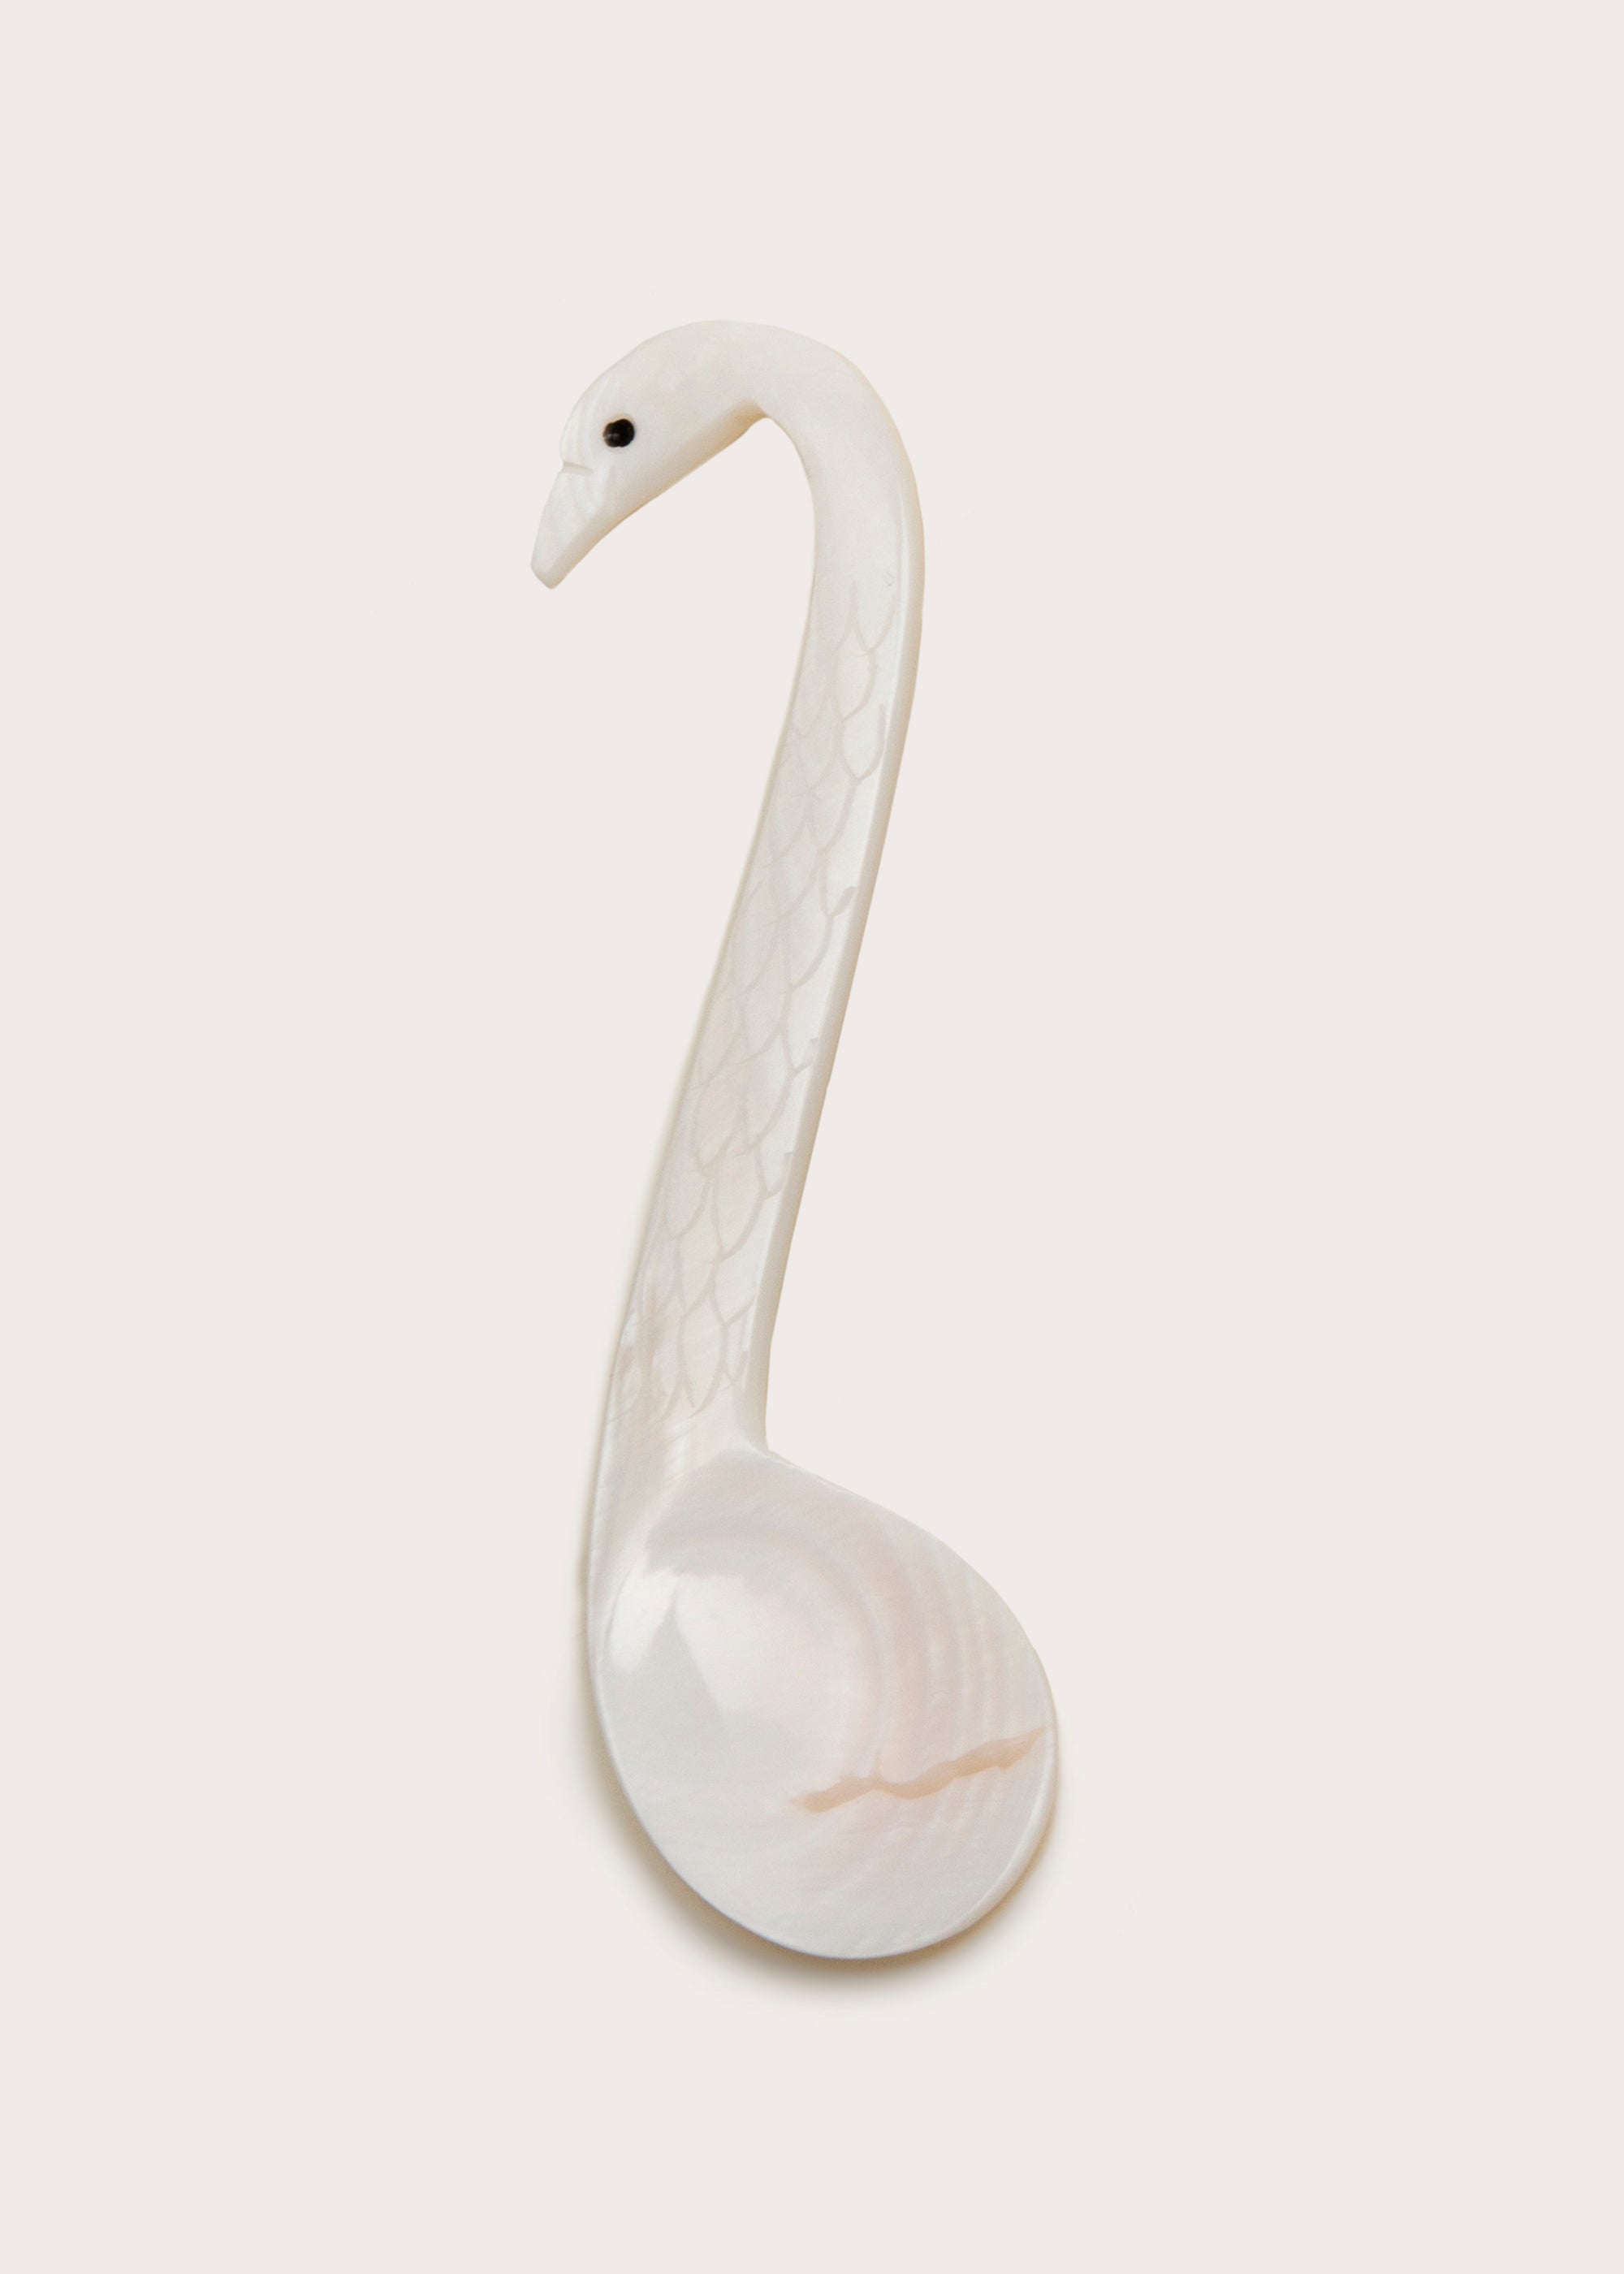 Swan Spoon PH